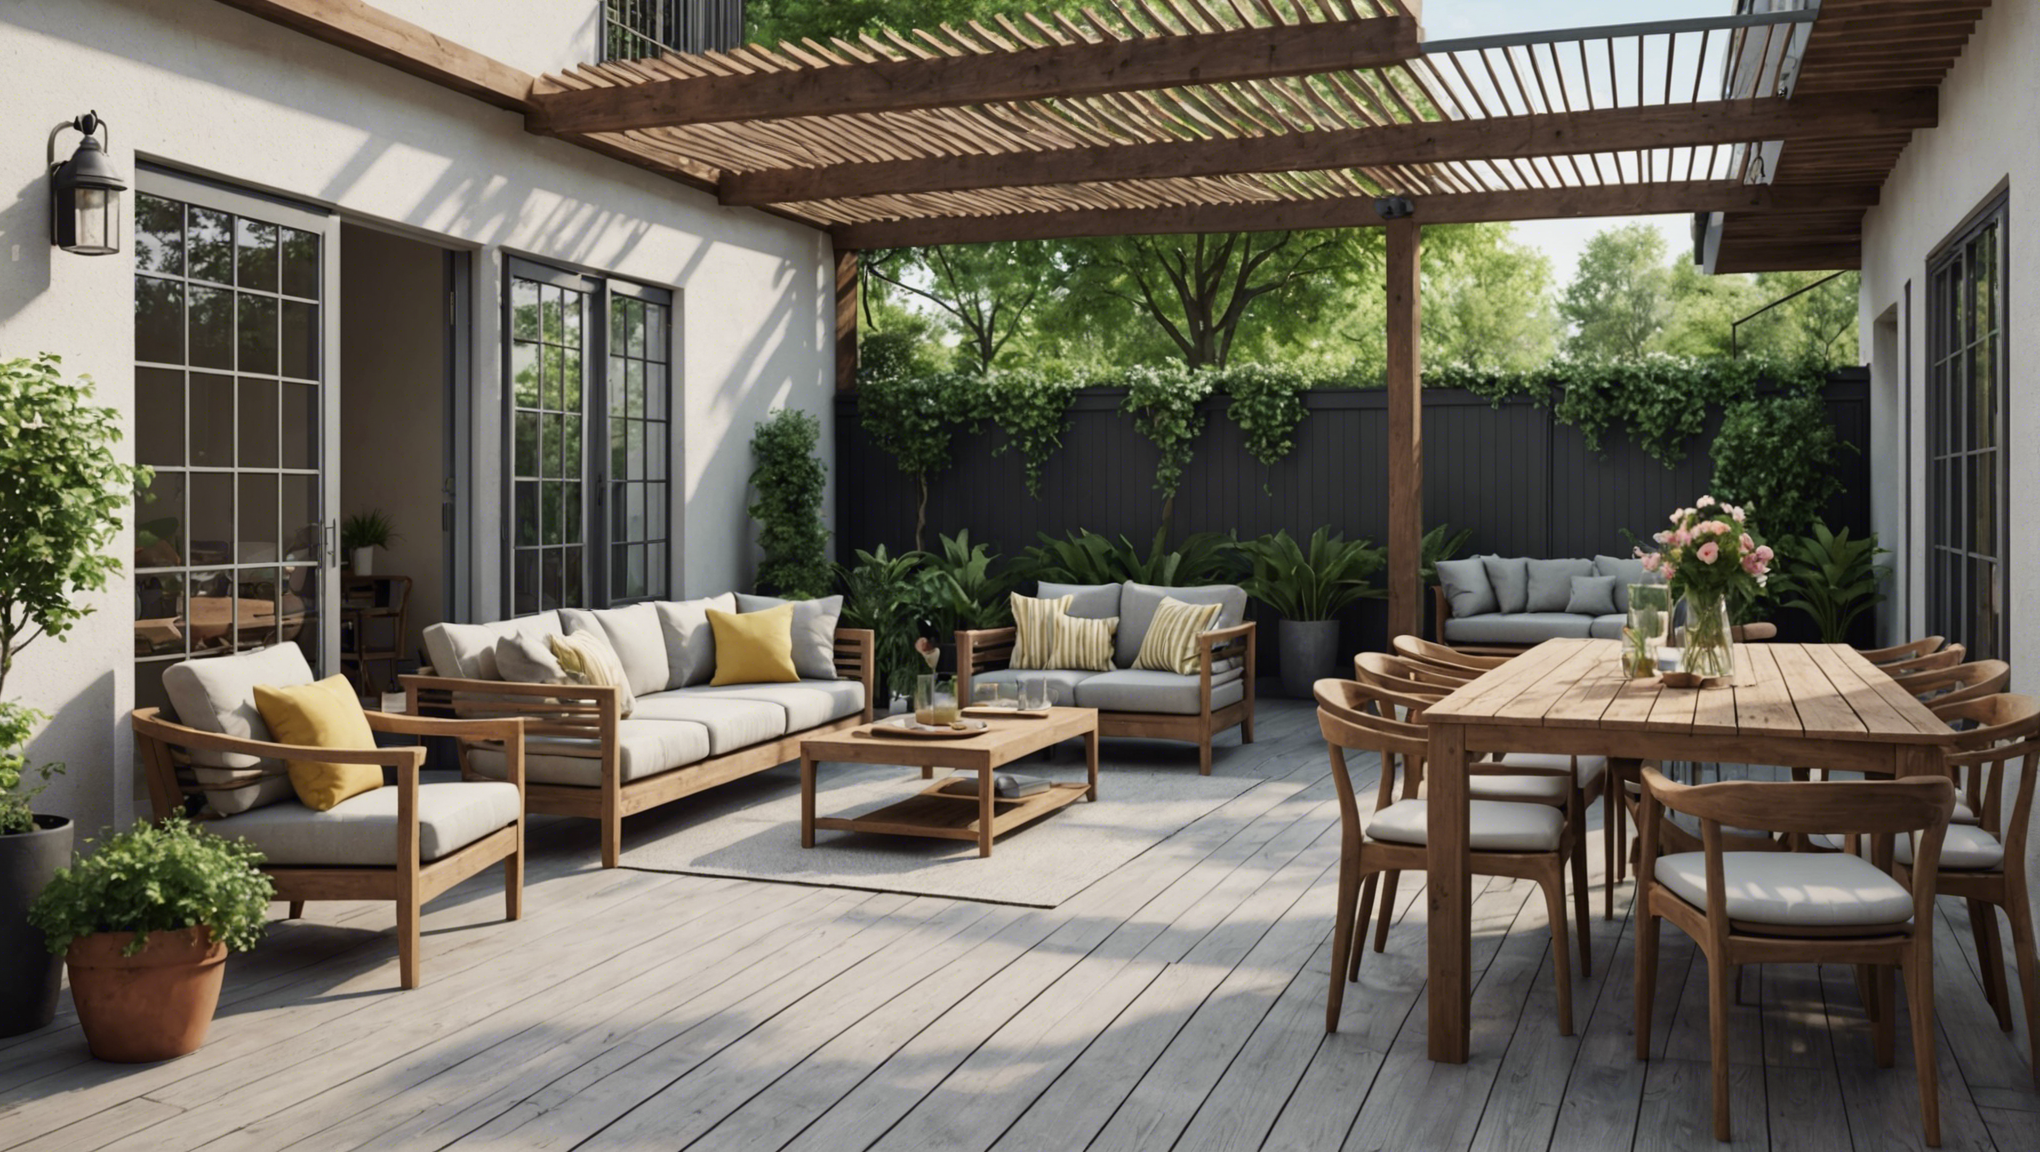 découvrez comment créer une terrasse extérieure incroyablement belle avec nos conseils et astuces. transformez votre espace extérieur en un lieu de détente à couper le souffle !